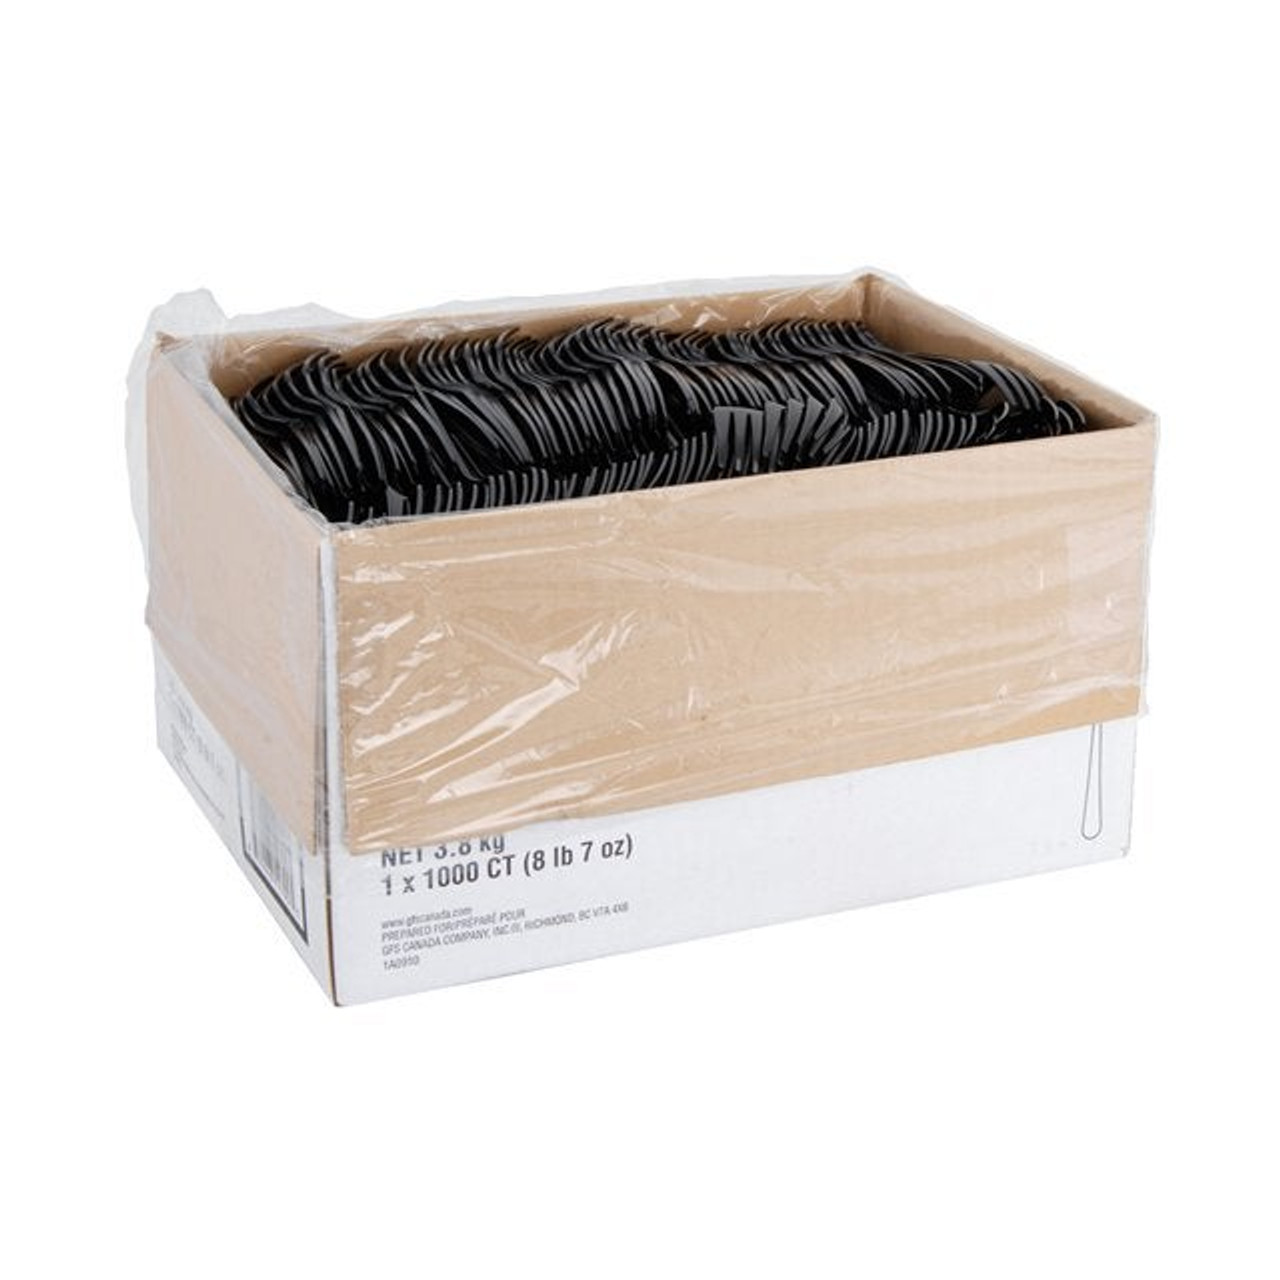 Gordon Choice Black Polystyrene Plastic Forks, Medium Weight, Cutlery | 1000UN/Unit, 1 Unit/Case